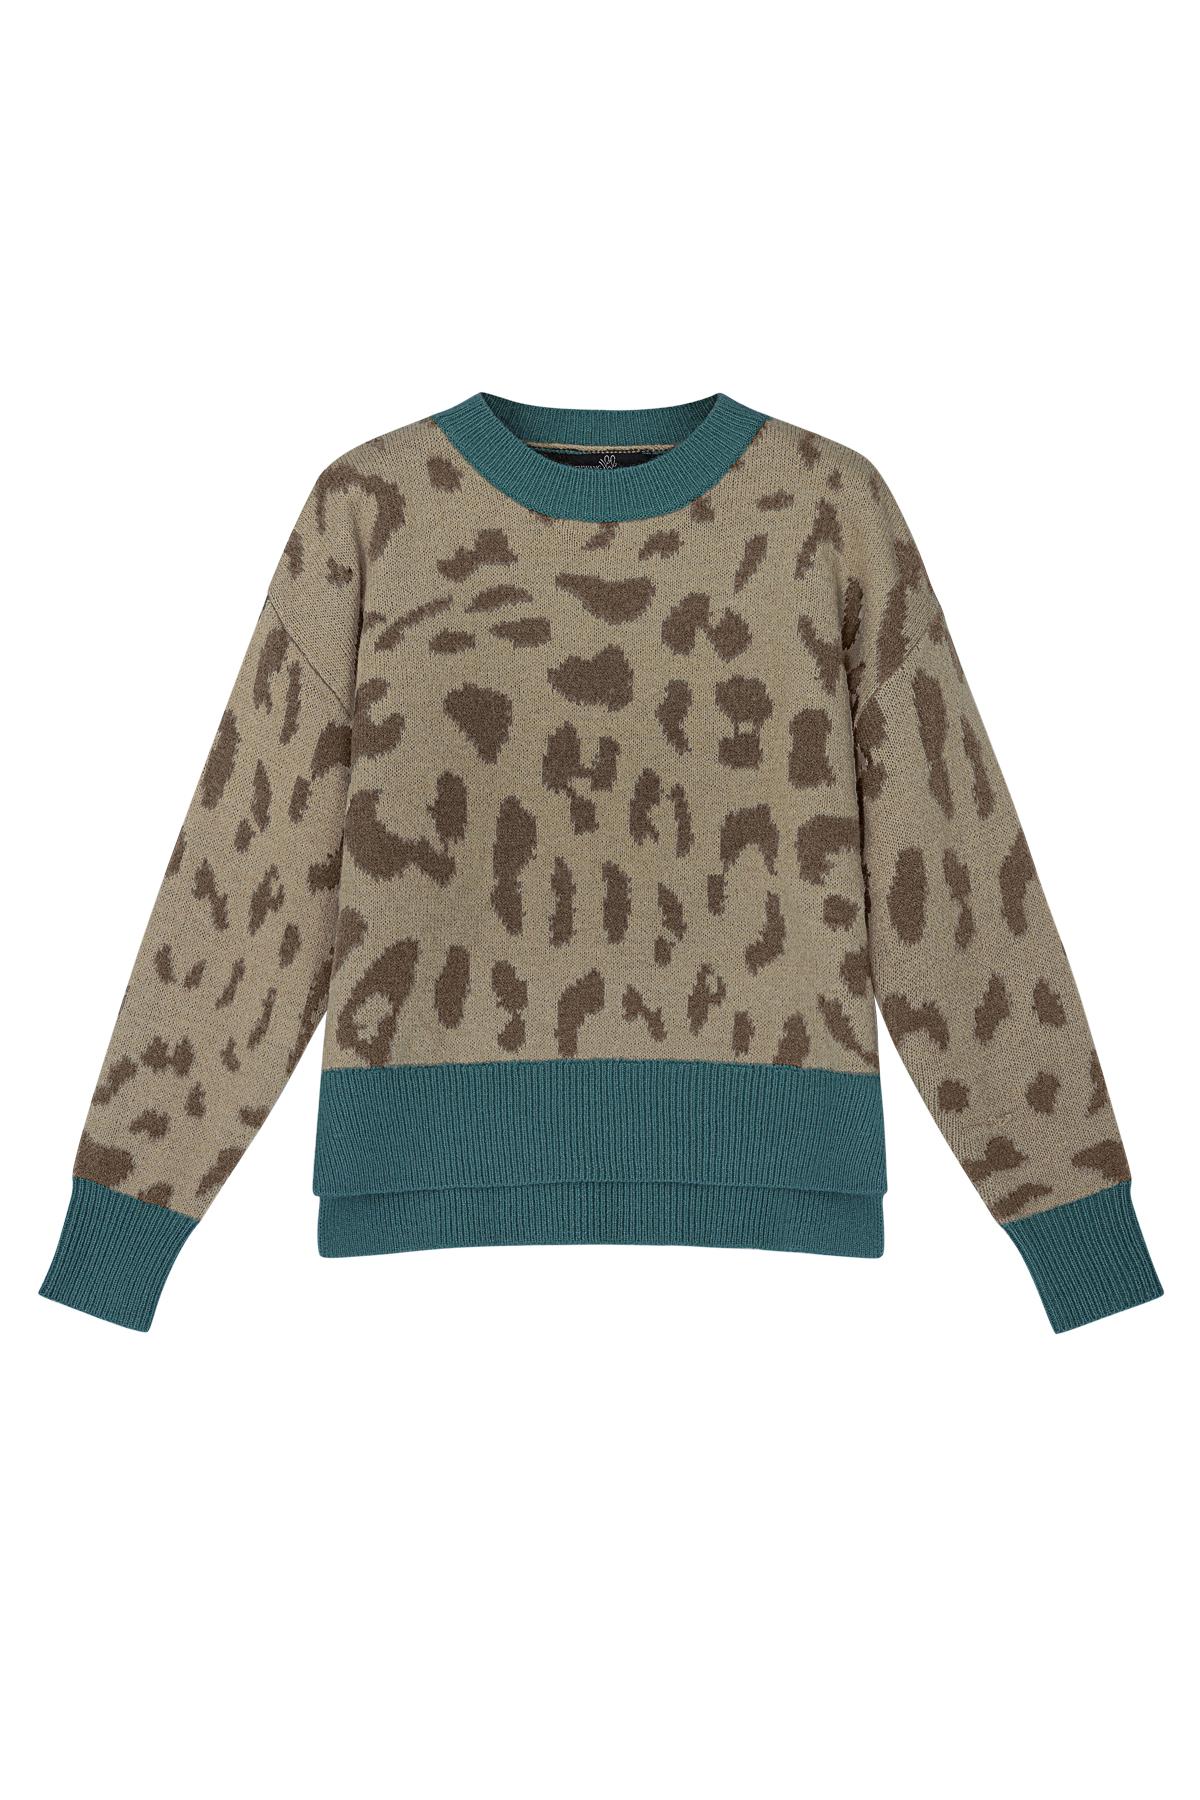 Pullover mit Leopardenmuster und blauem Kragen Taupe S/M